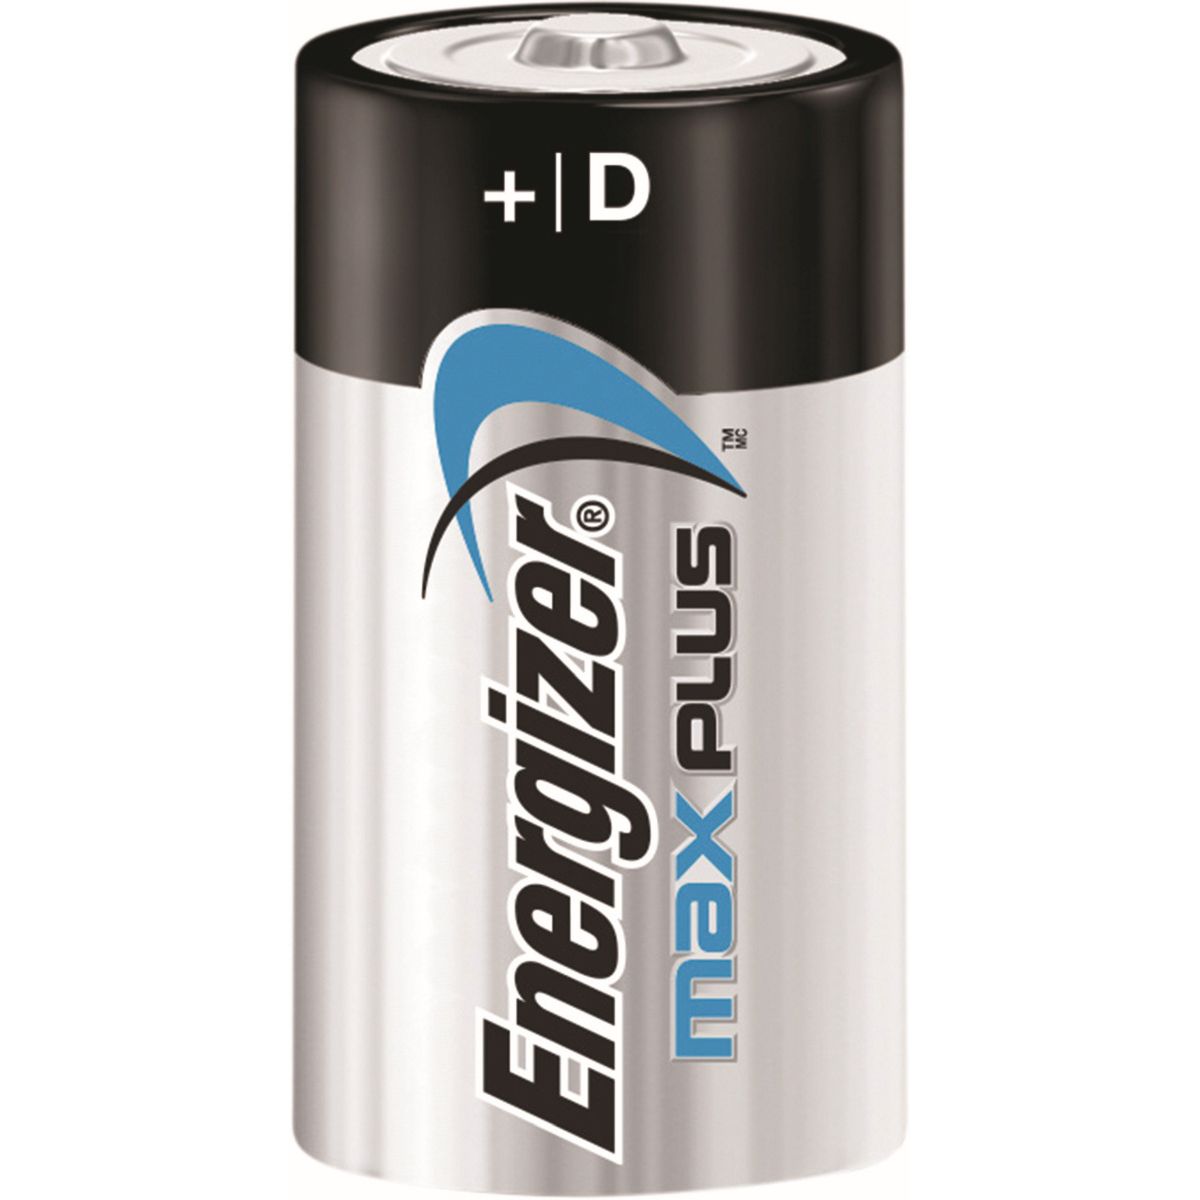 Baterie Energizer Max Plus D LR20 LR20 (EN-423358)